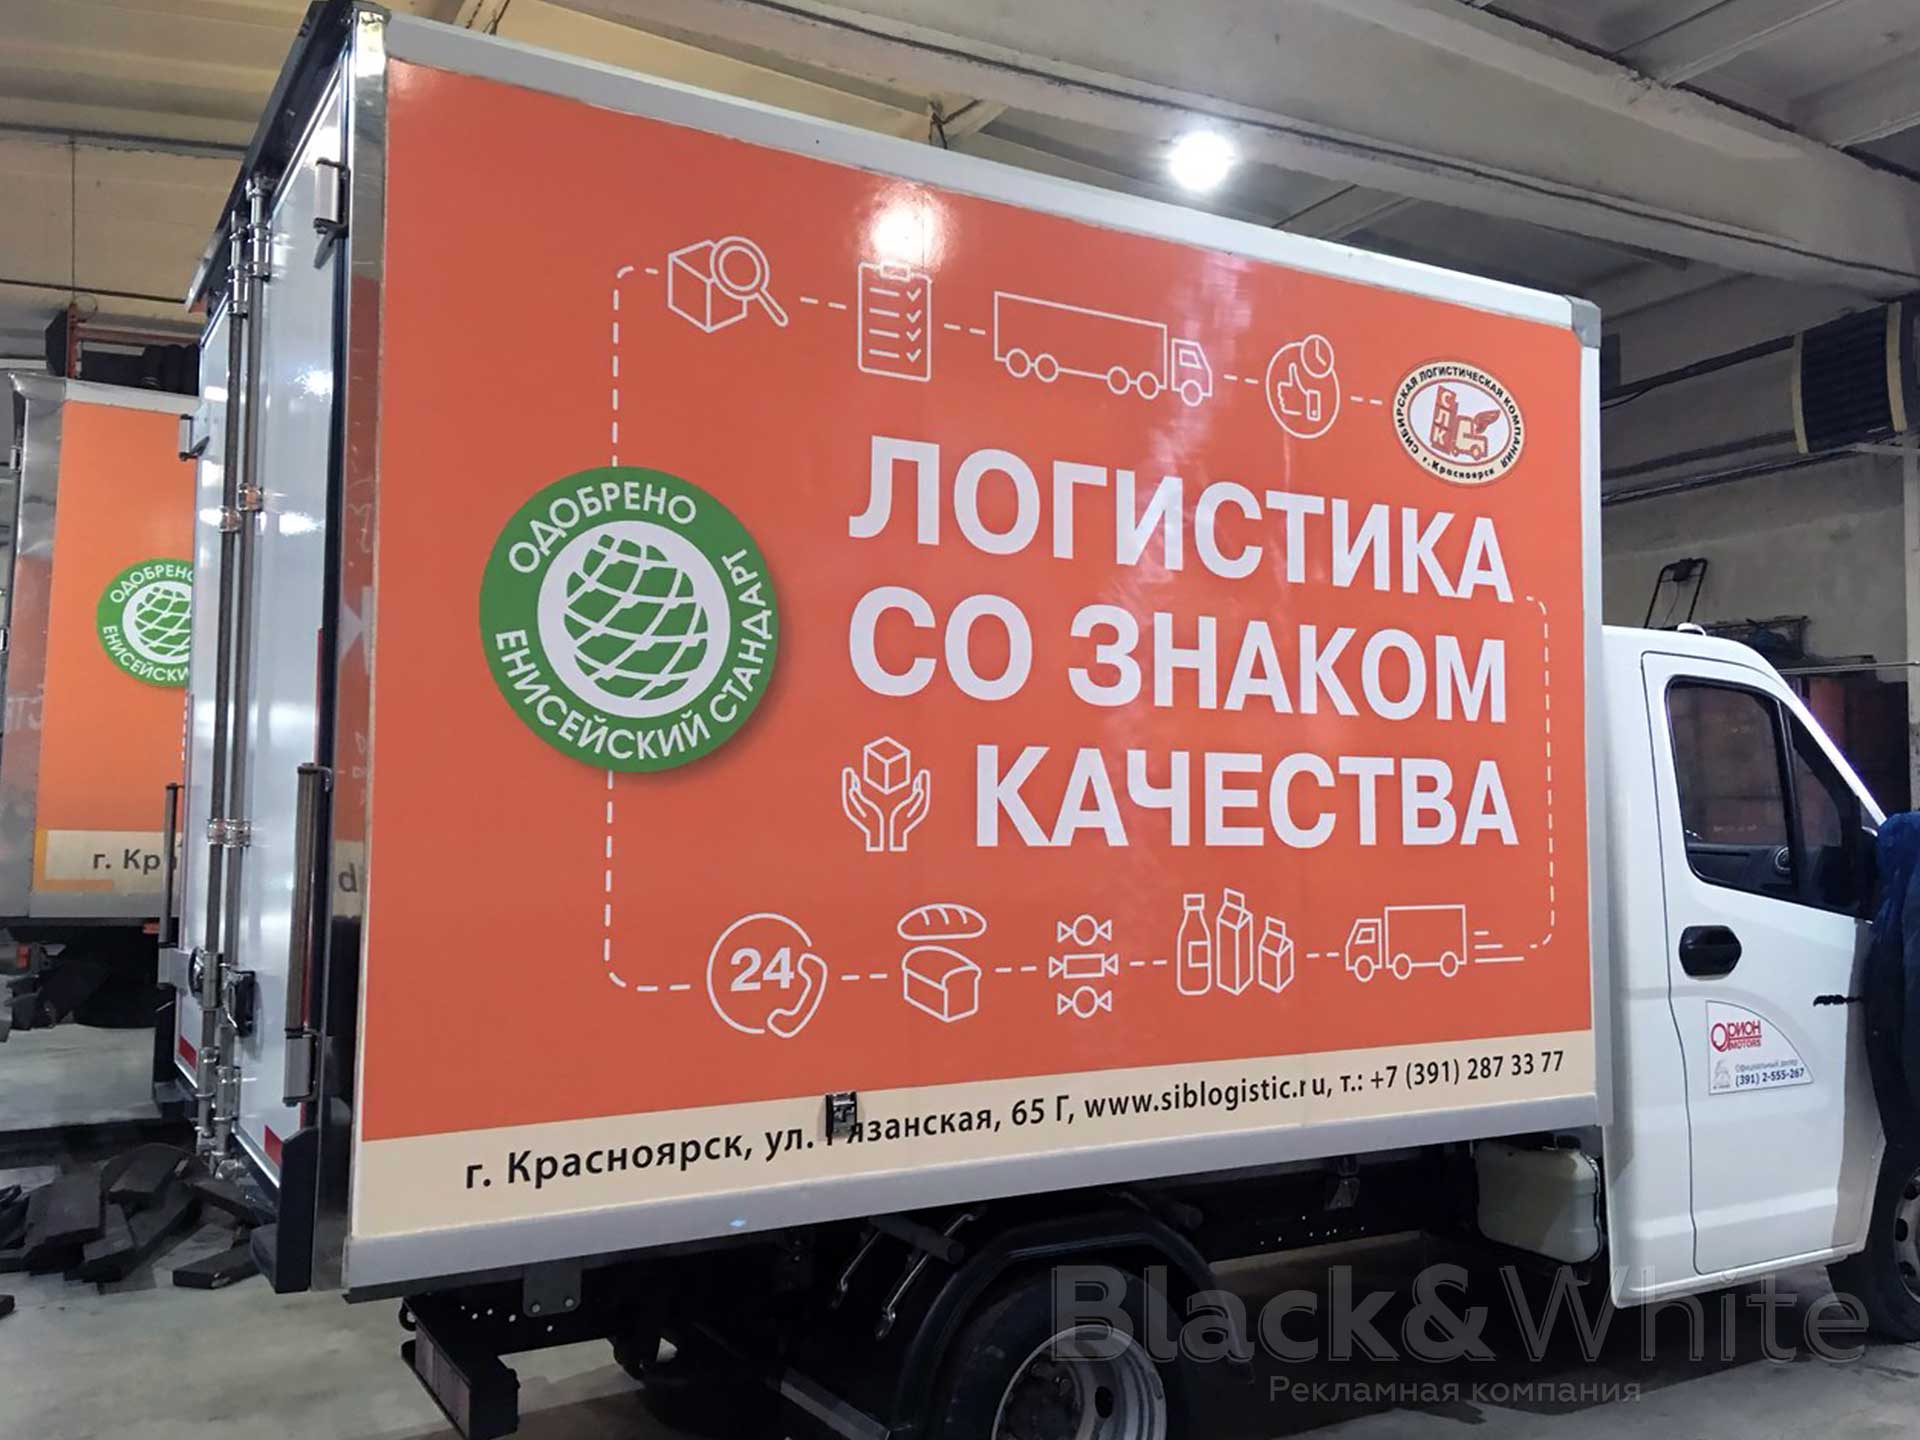 Брендирование-грузовых-автомобилей-виниловой-плёнкой-в-красноярске-bw..jpg